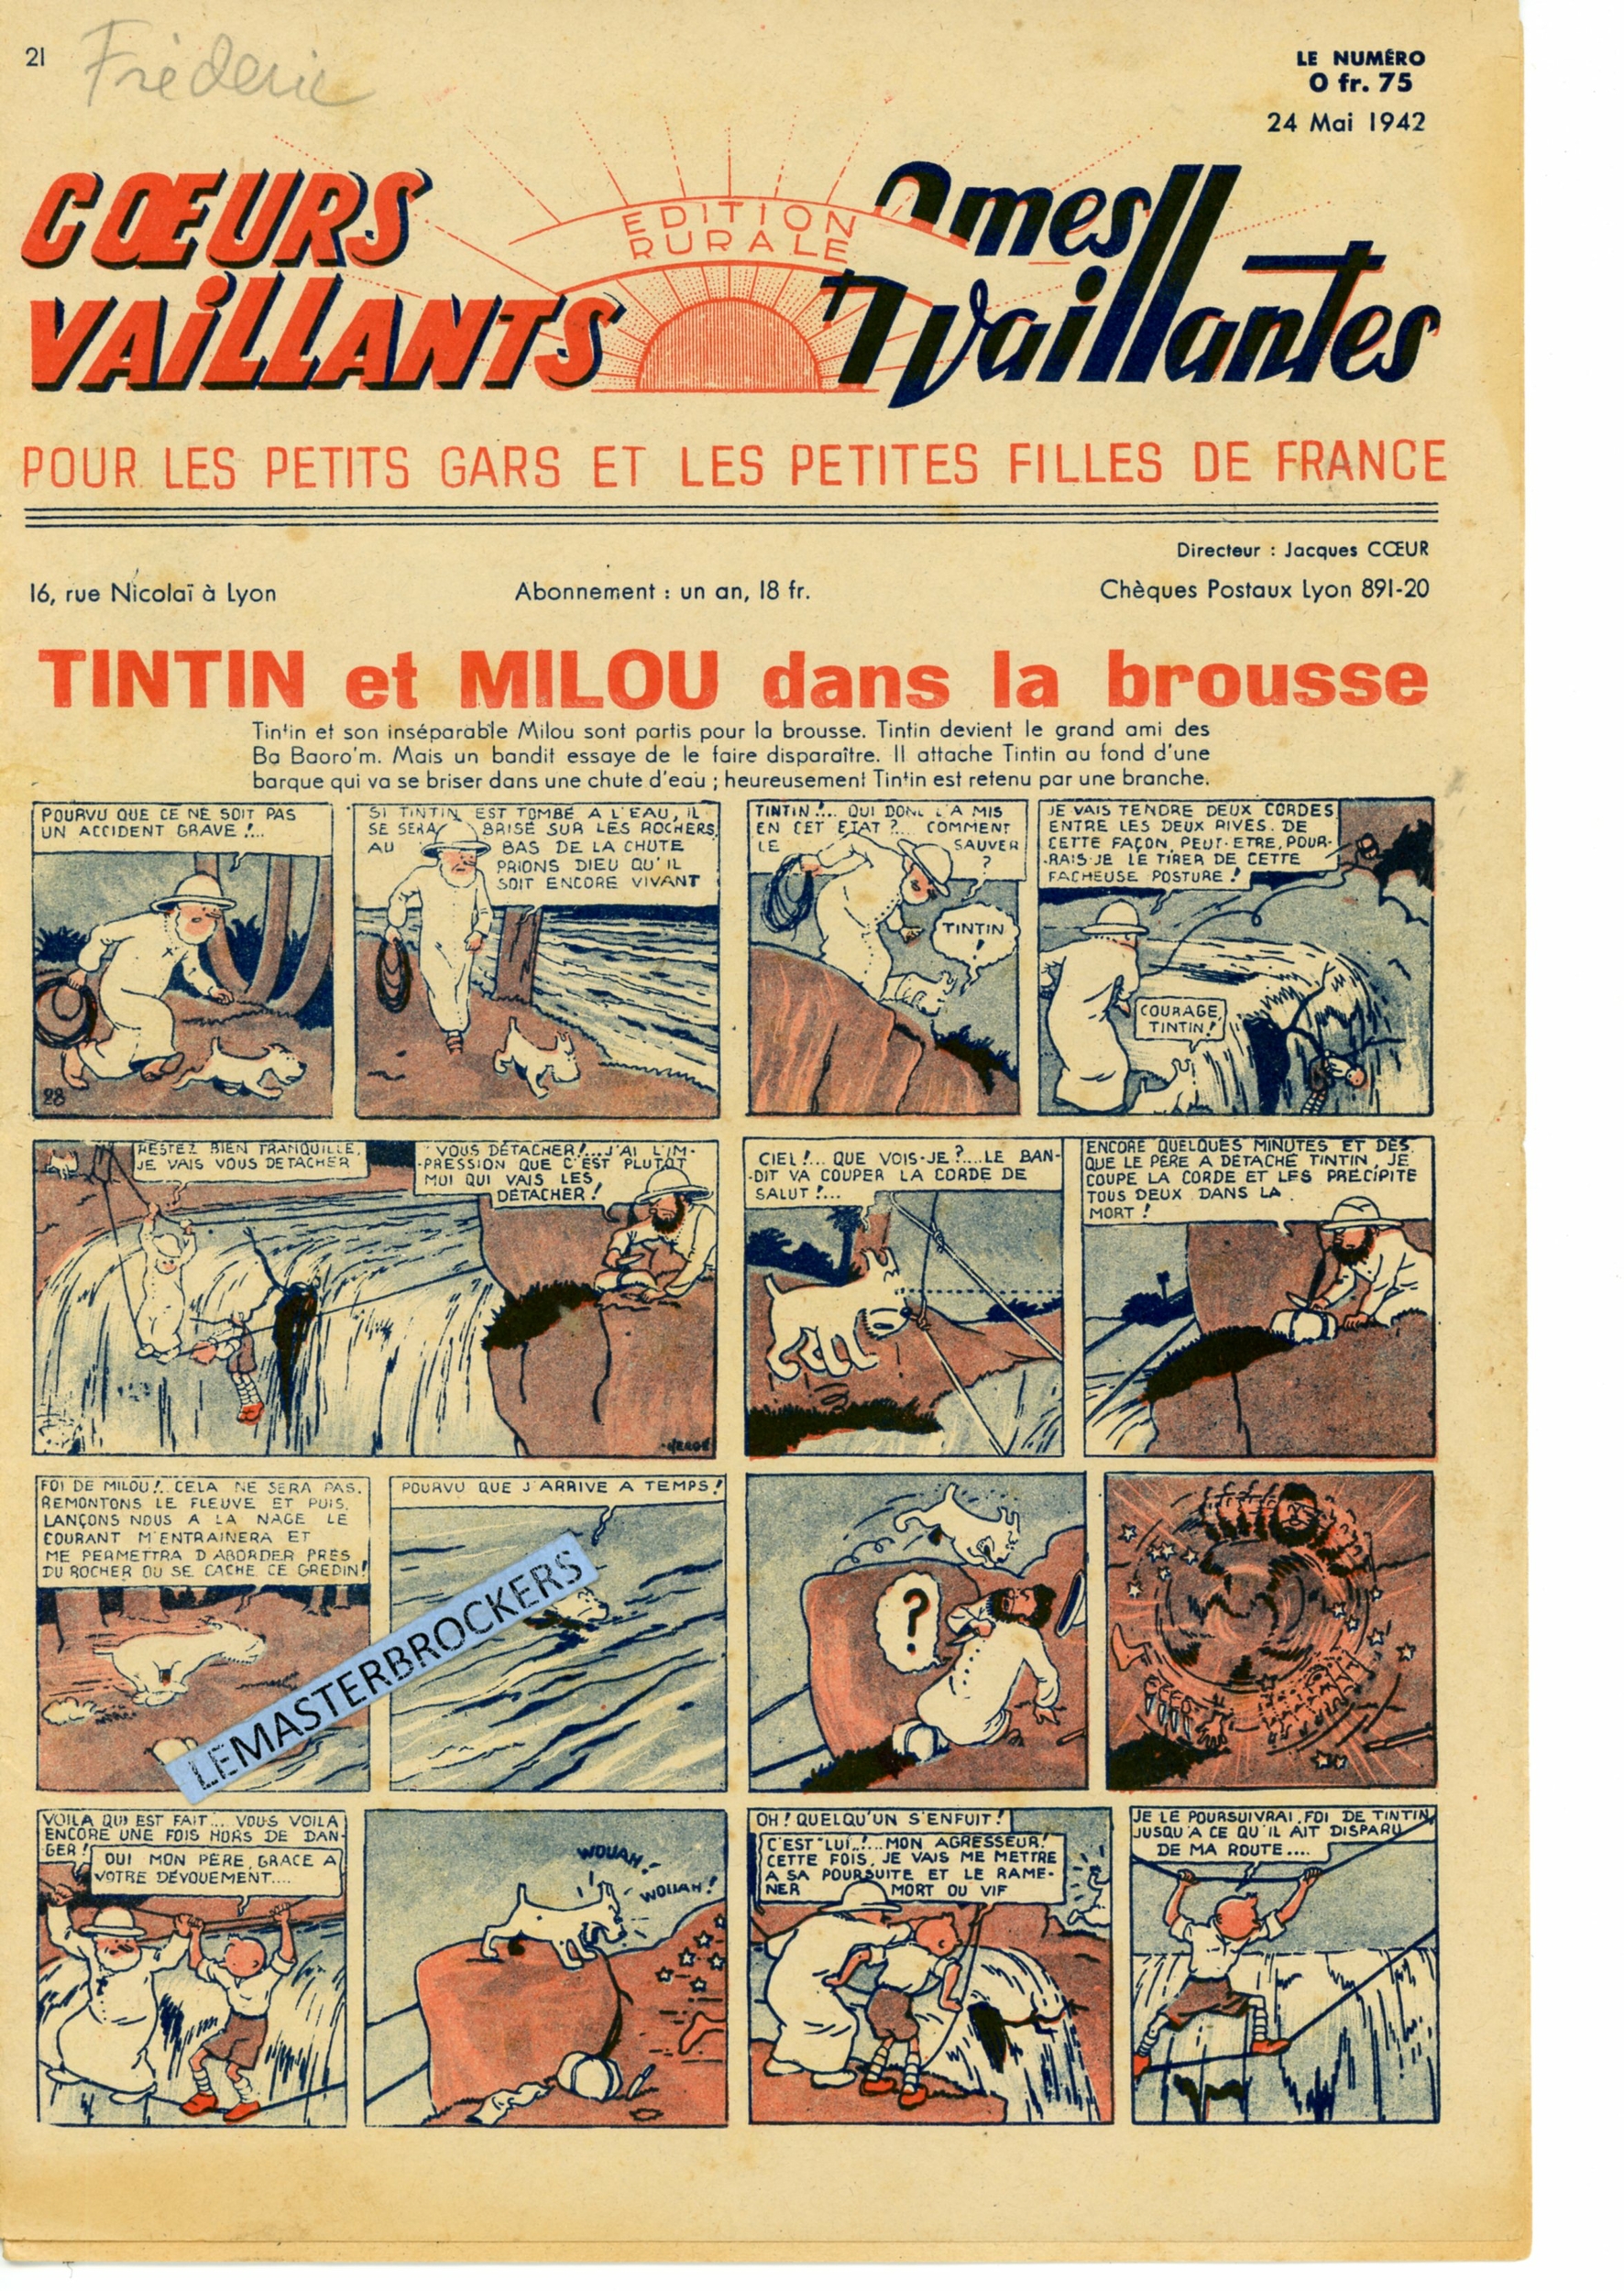 TINTIN ET MILOU DANS LA BROUSSE - COEURS VAILLANTS N° 21 - SUPPLÉMENT BIMENSUEL 29 MAI 1942